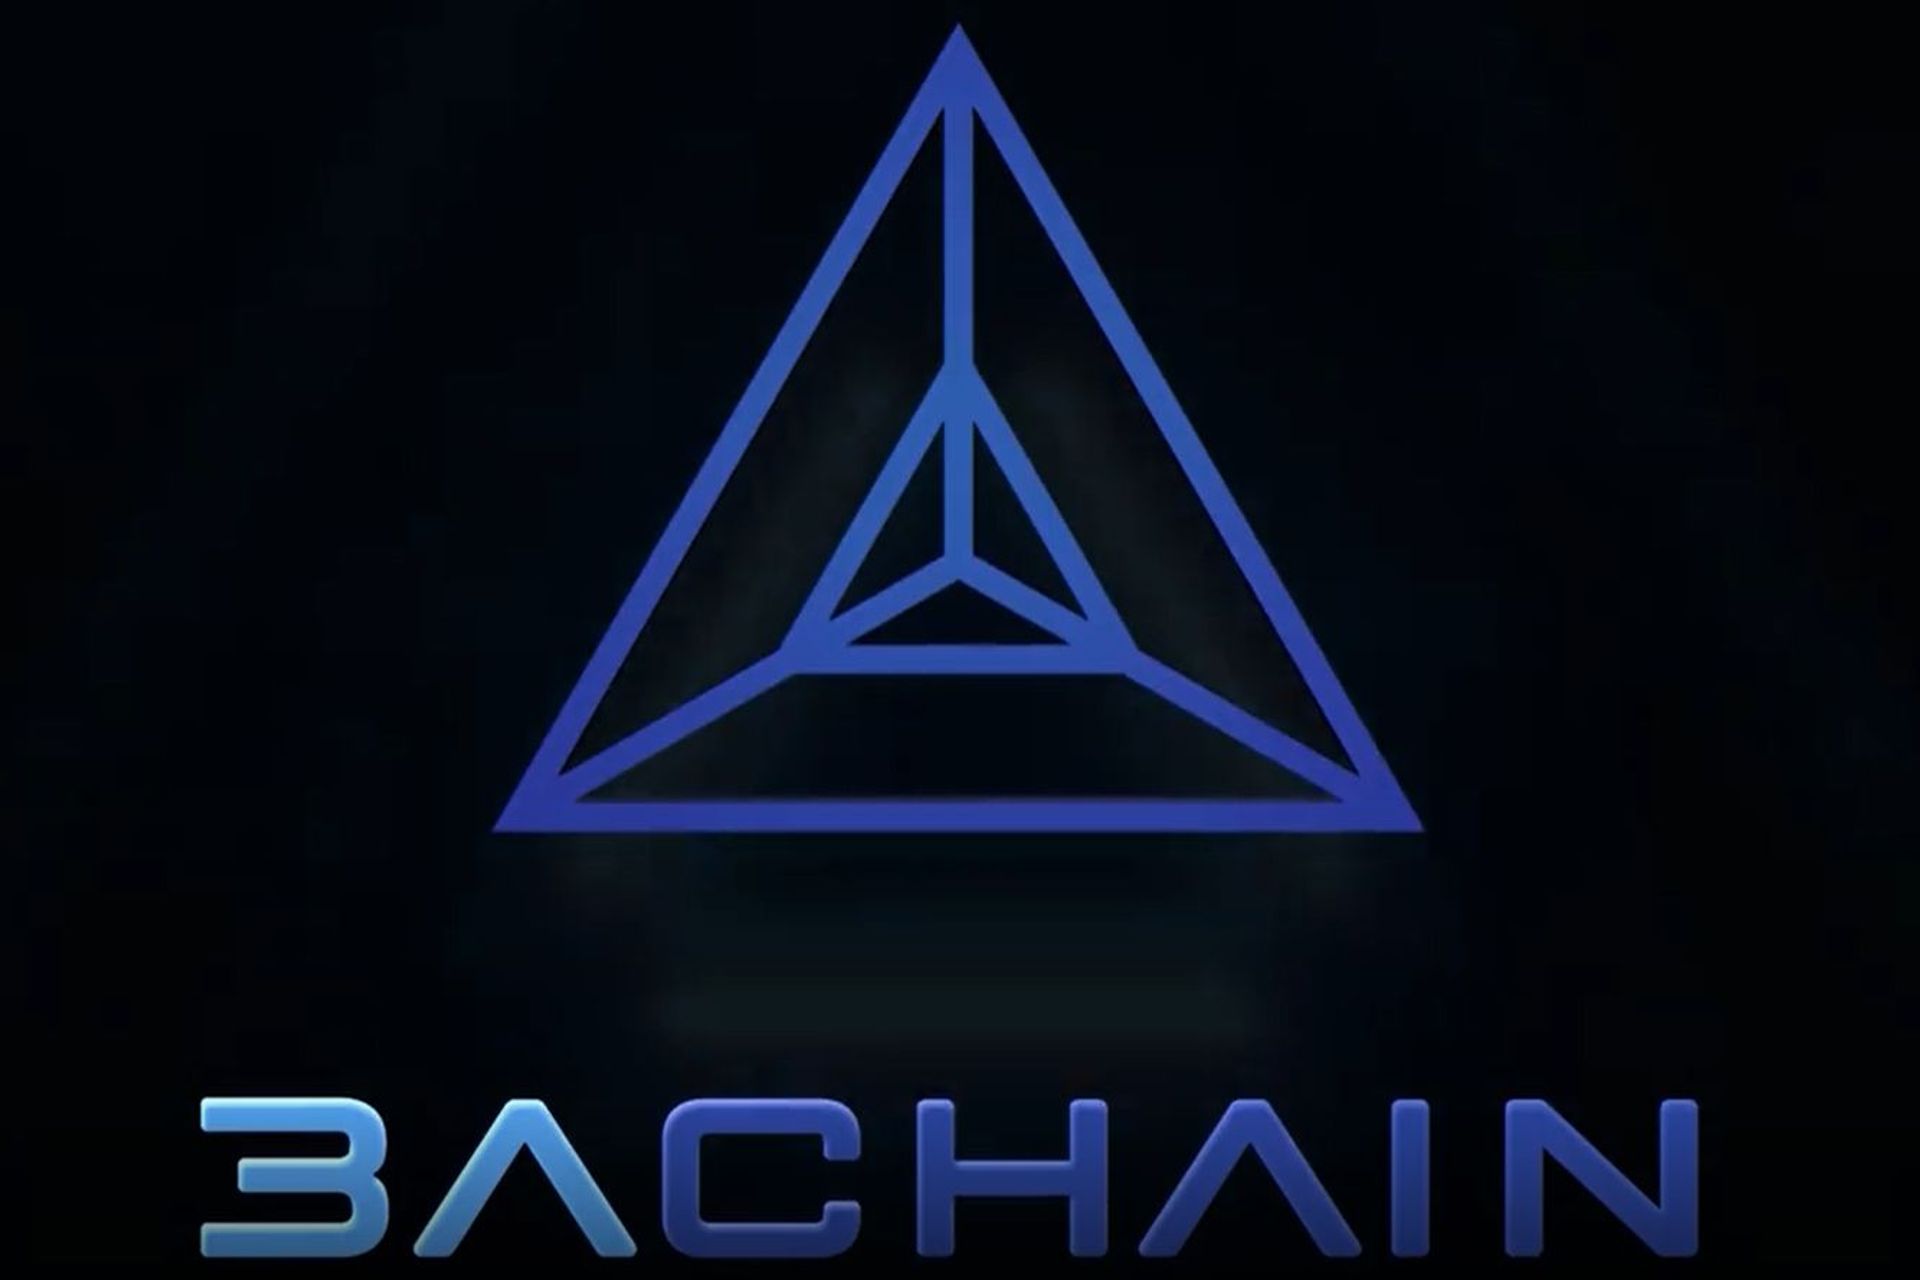 Το λογότυπο του blockchain A3chain που κυκλοφόρησε από την πόλη του Λουγκάνο